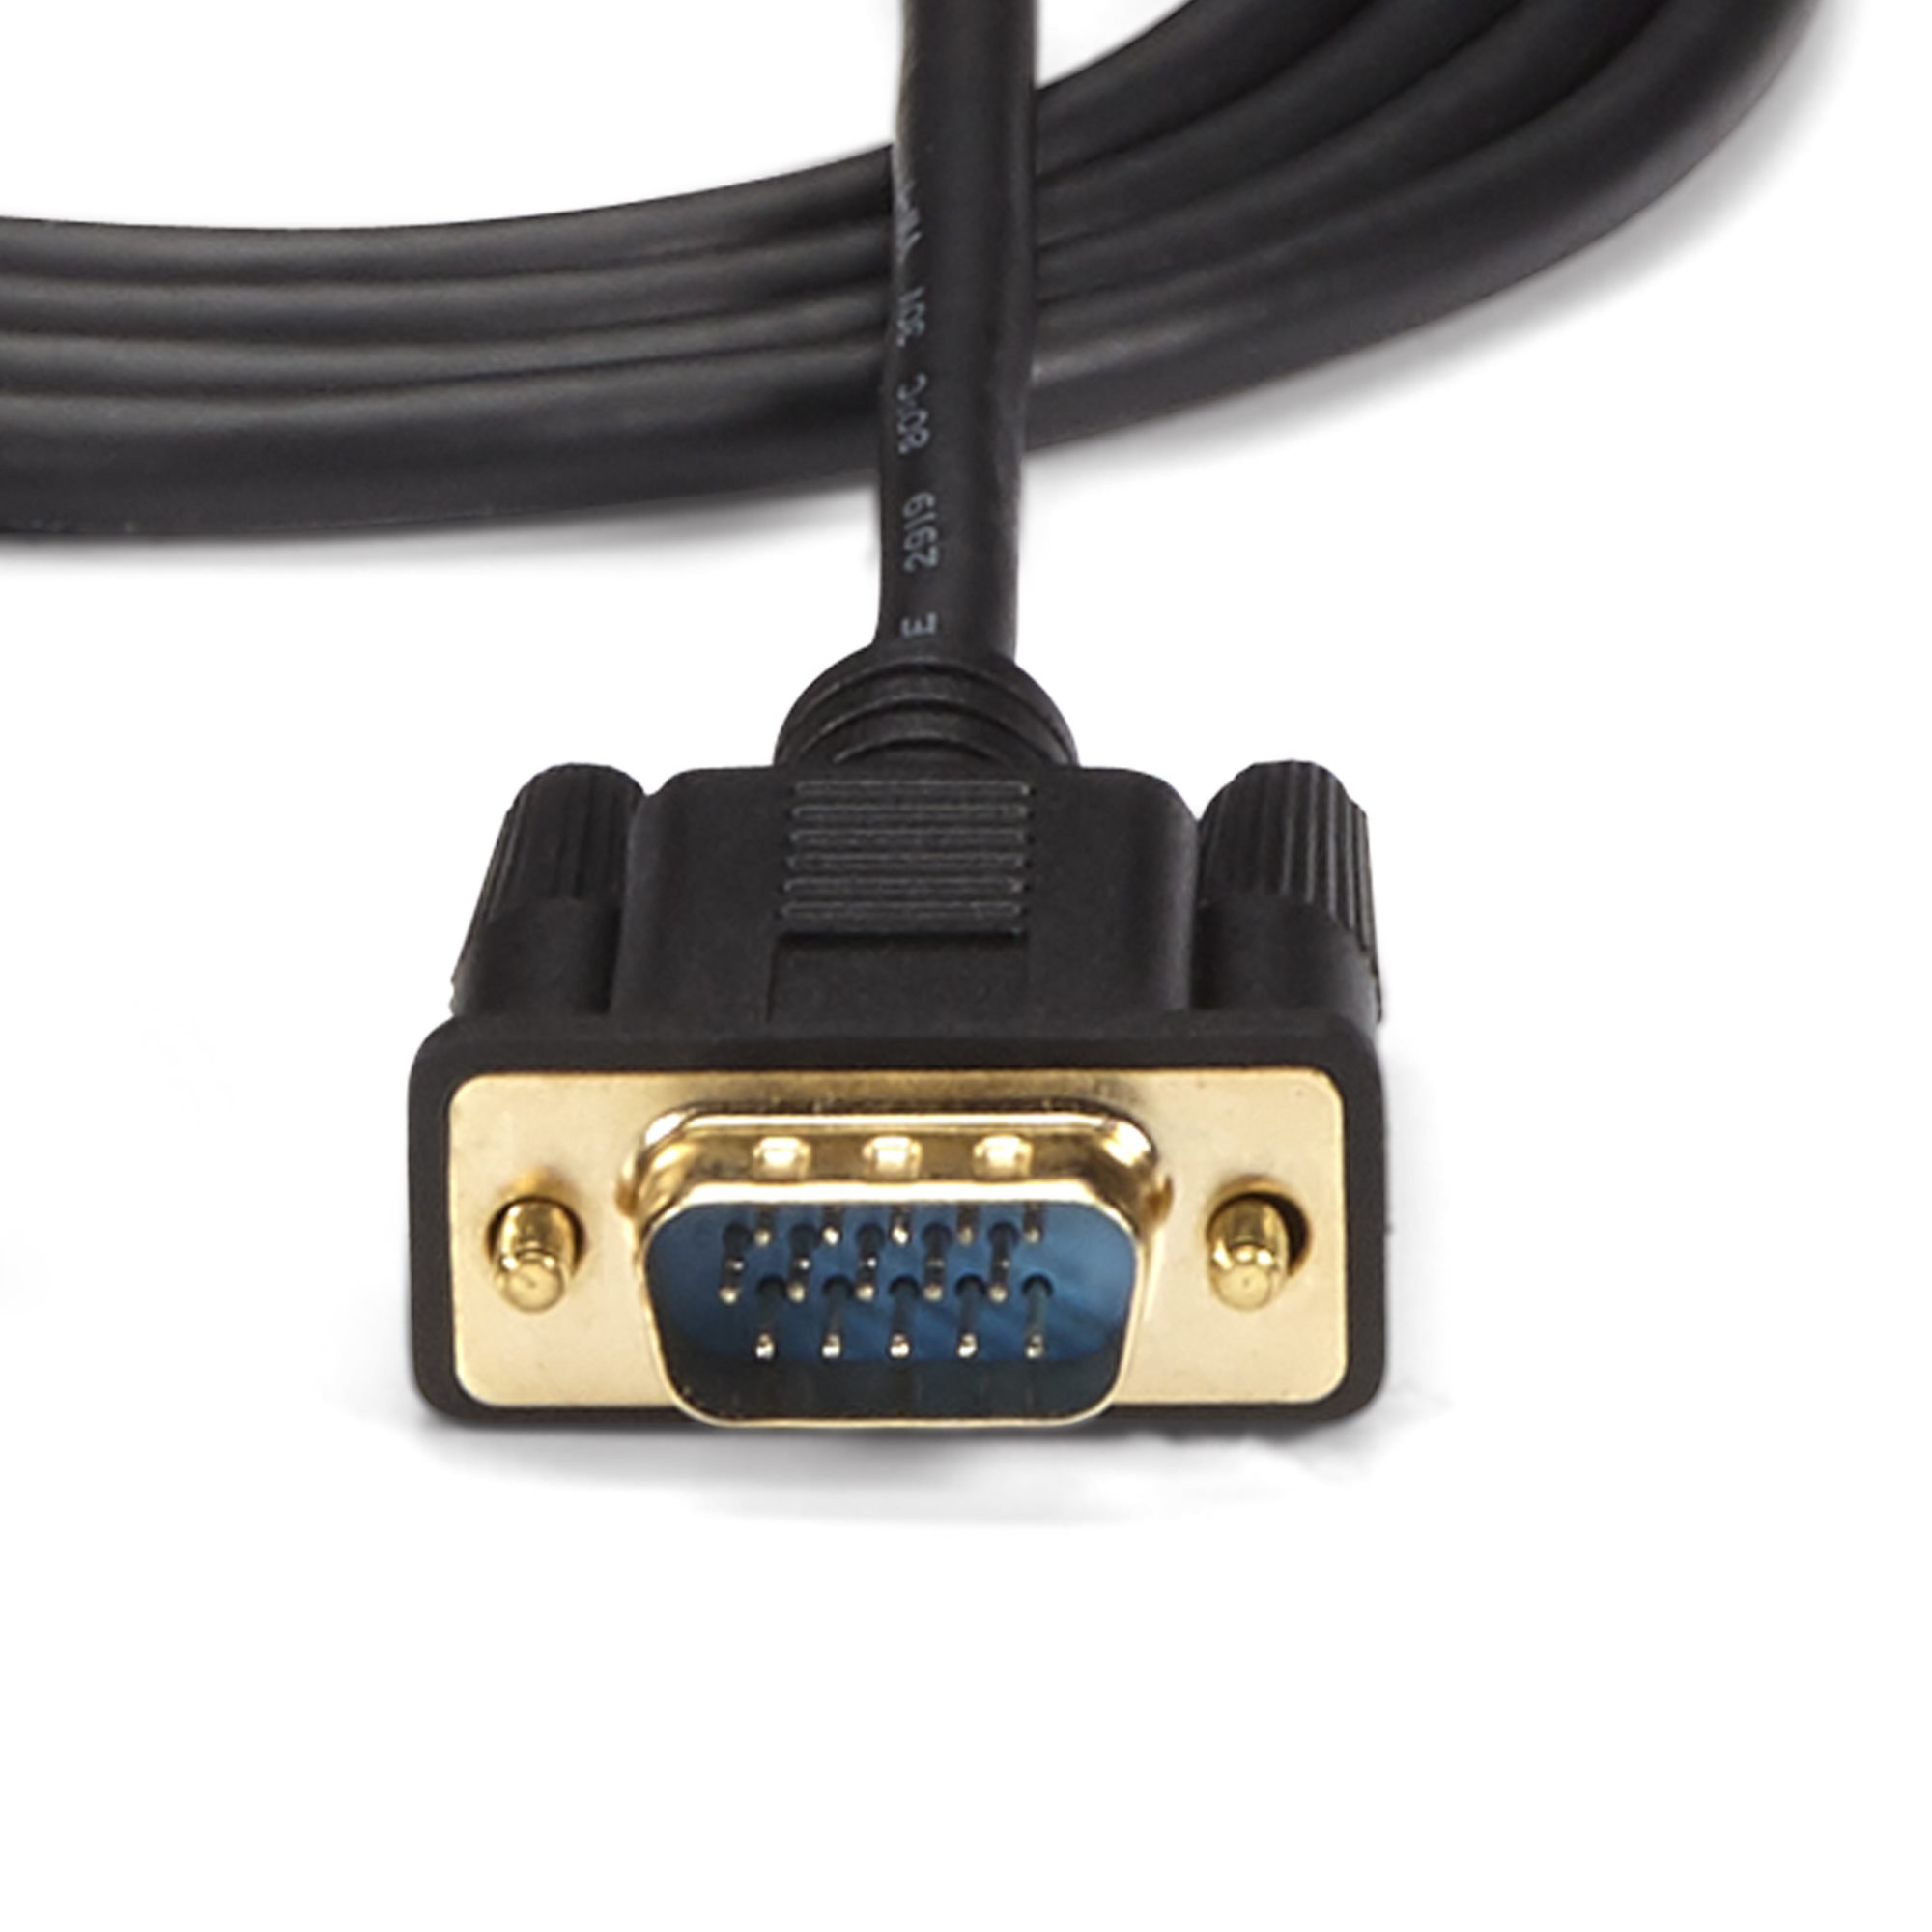 HDMI VGAアクティブ変換ケーブルアダプタ 1.8m オス/オス HDMI ＆ DVI ビデオアダプタ 日本